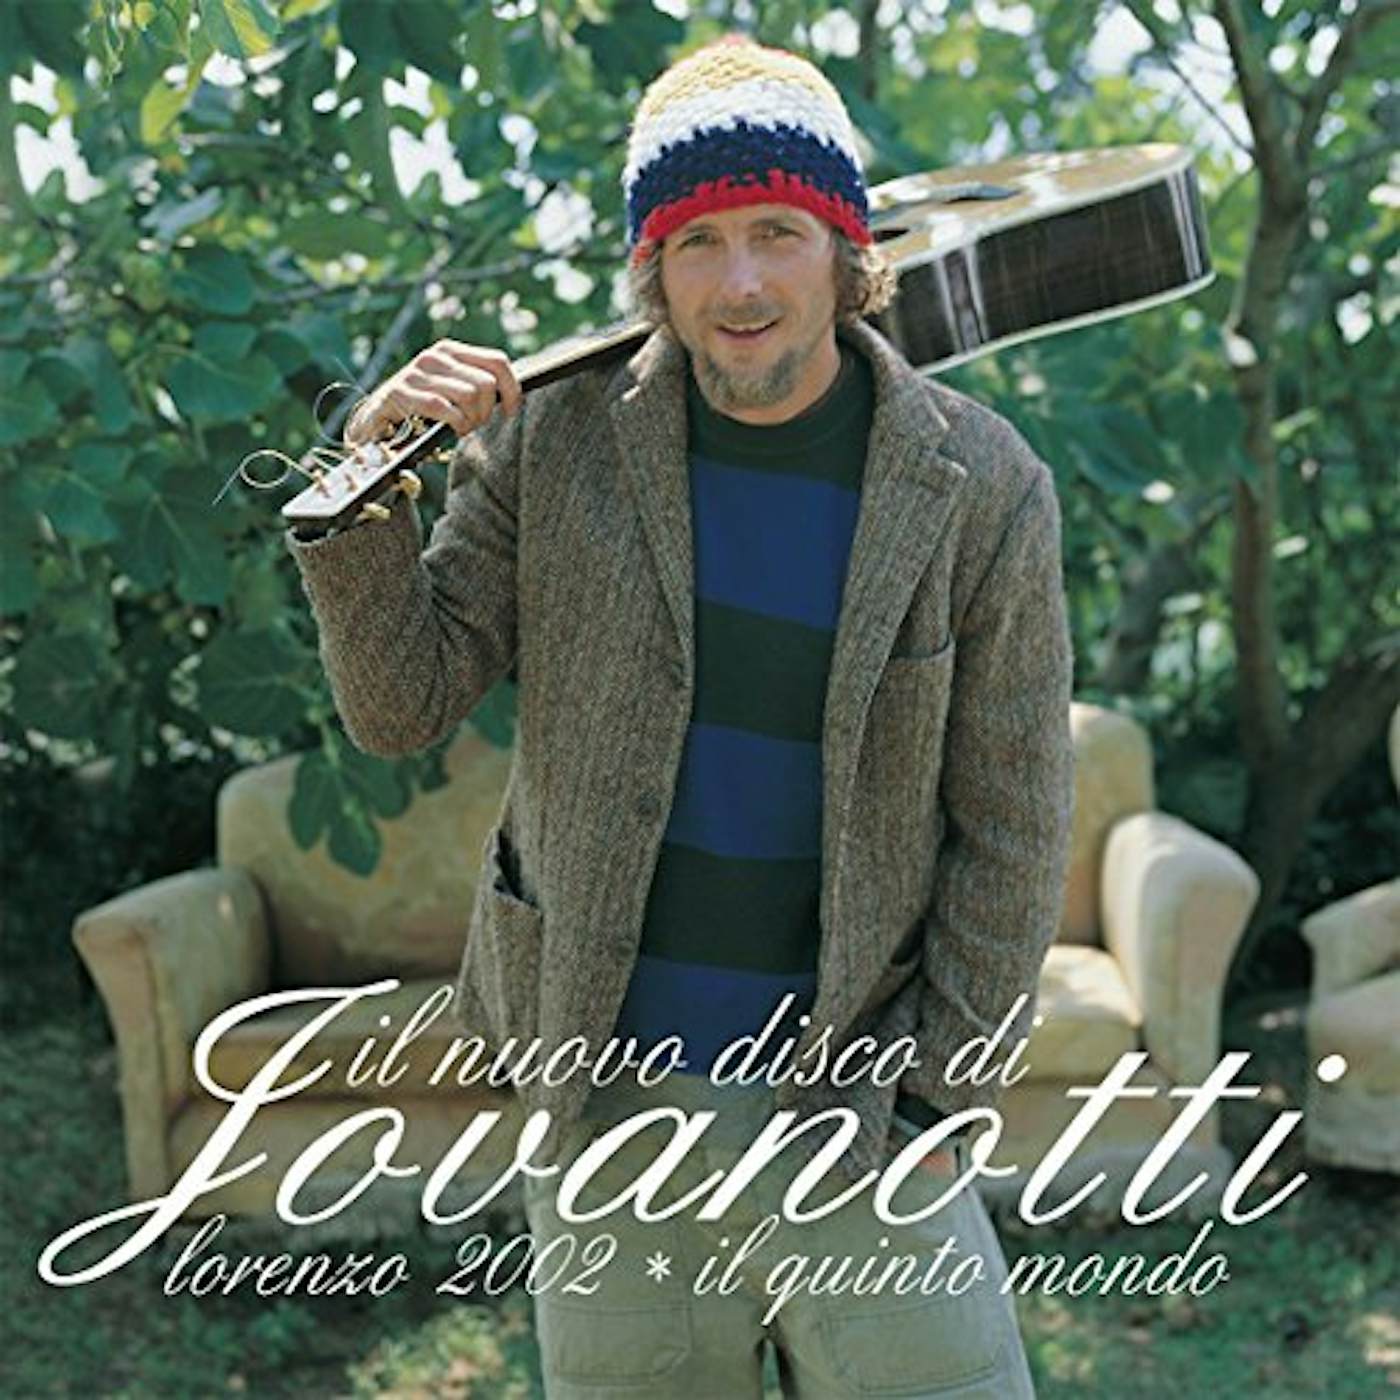 Jovanotti LORENZO 2002: IL QUINTO MONDO Vinyl Record